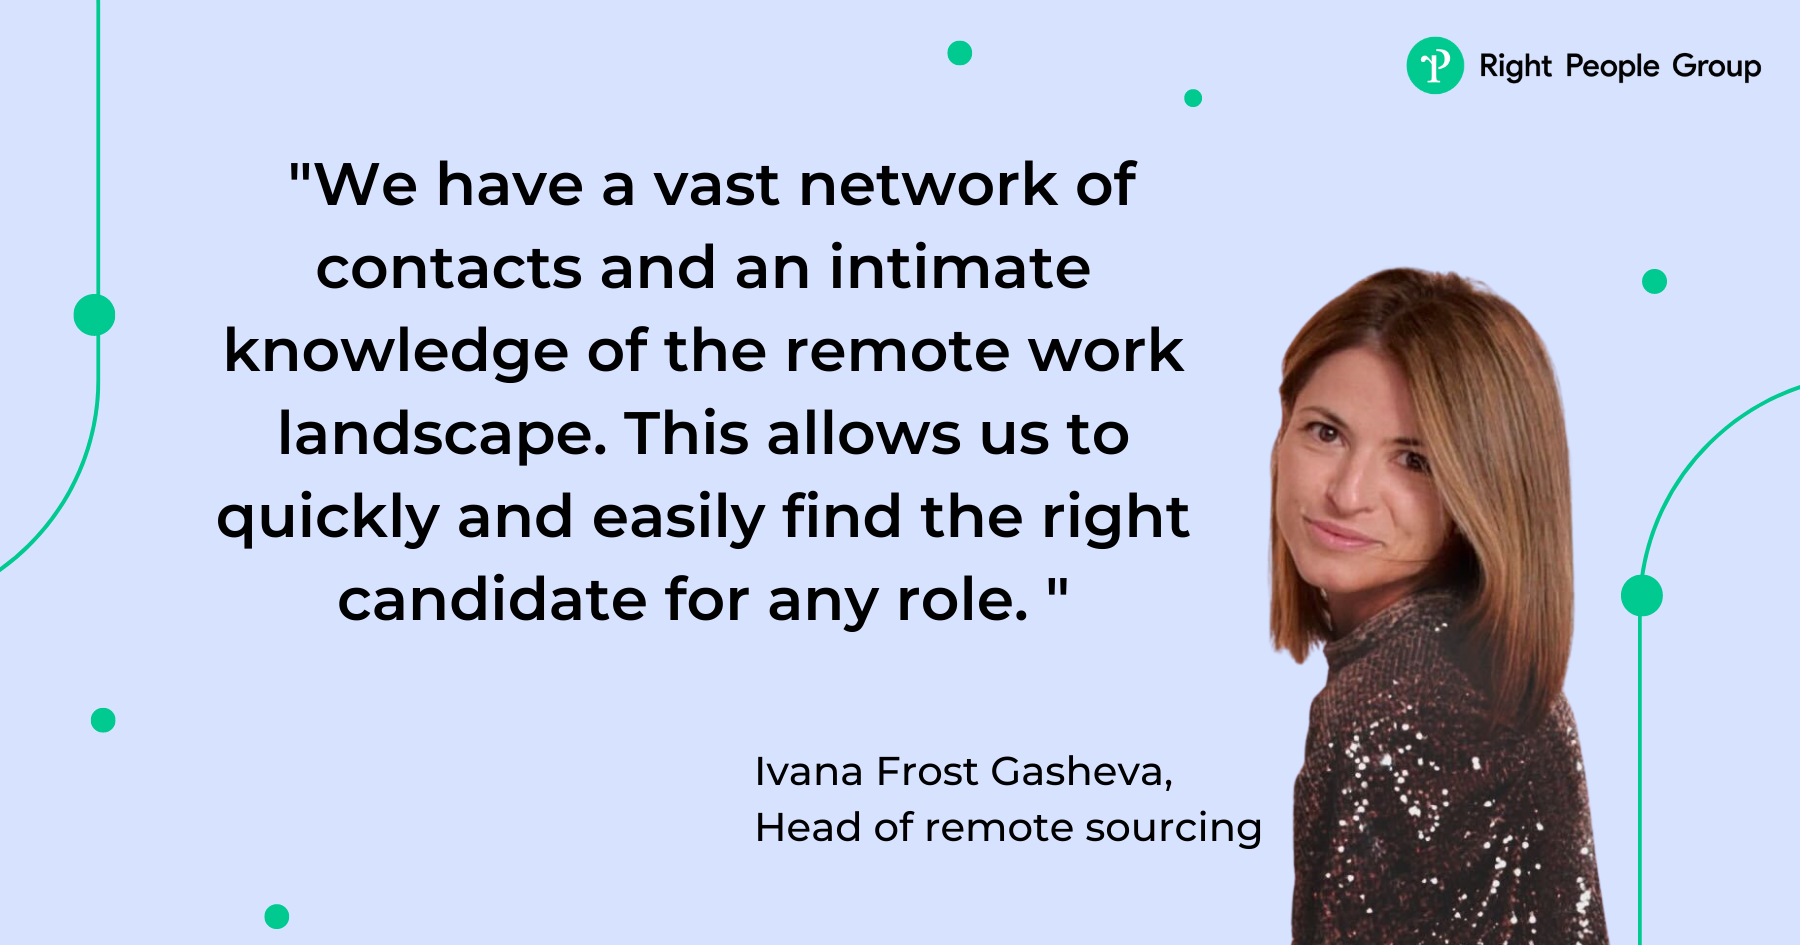 Vi presentiamo Ivana Frost Gasheva, la nostra nuova responsabile del Remote Sourcing